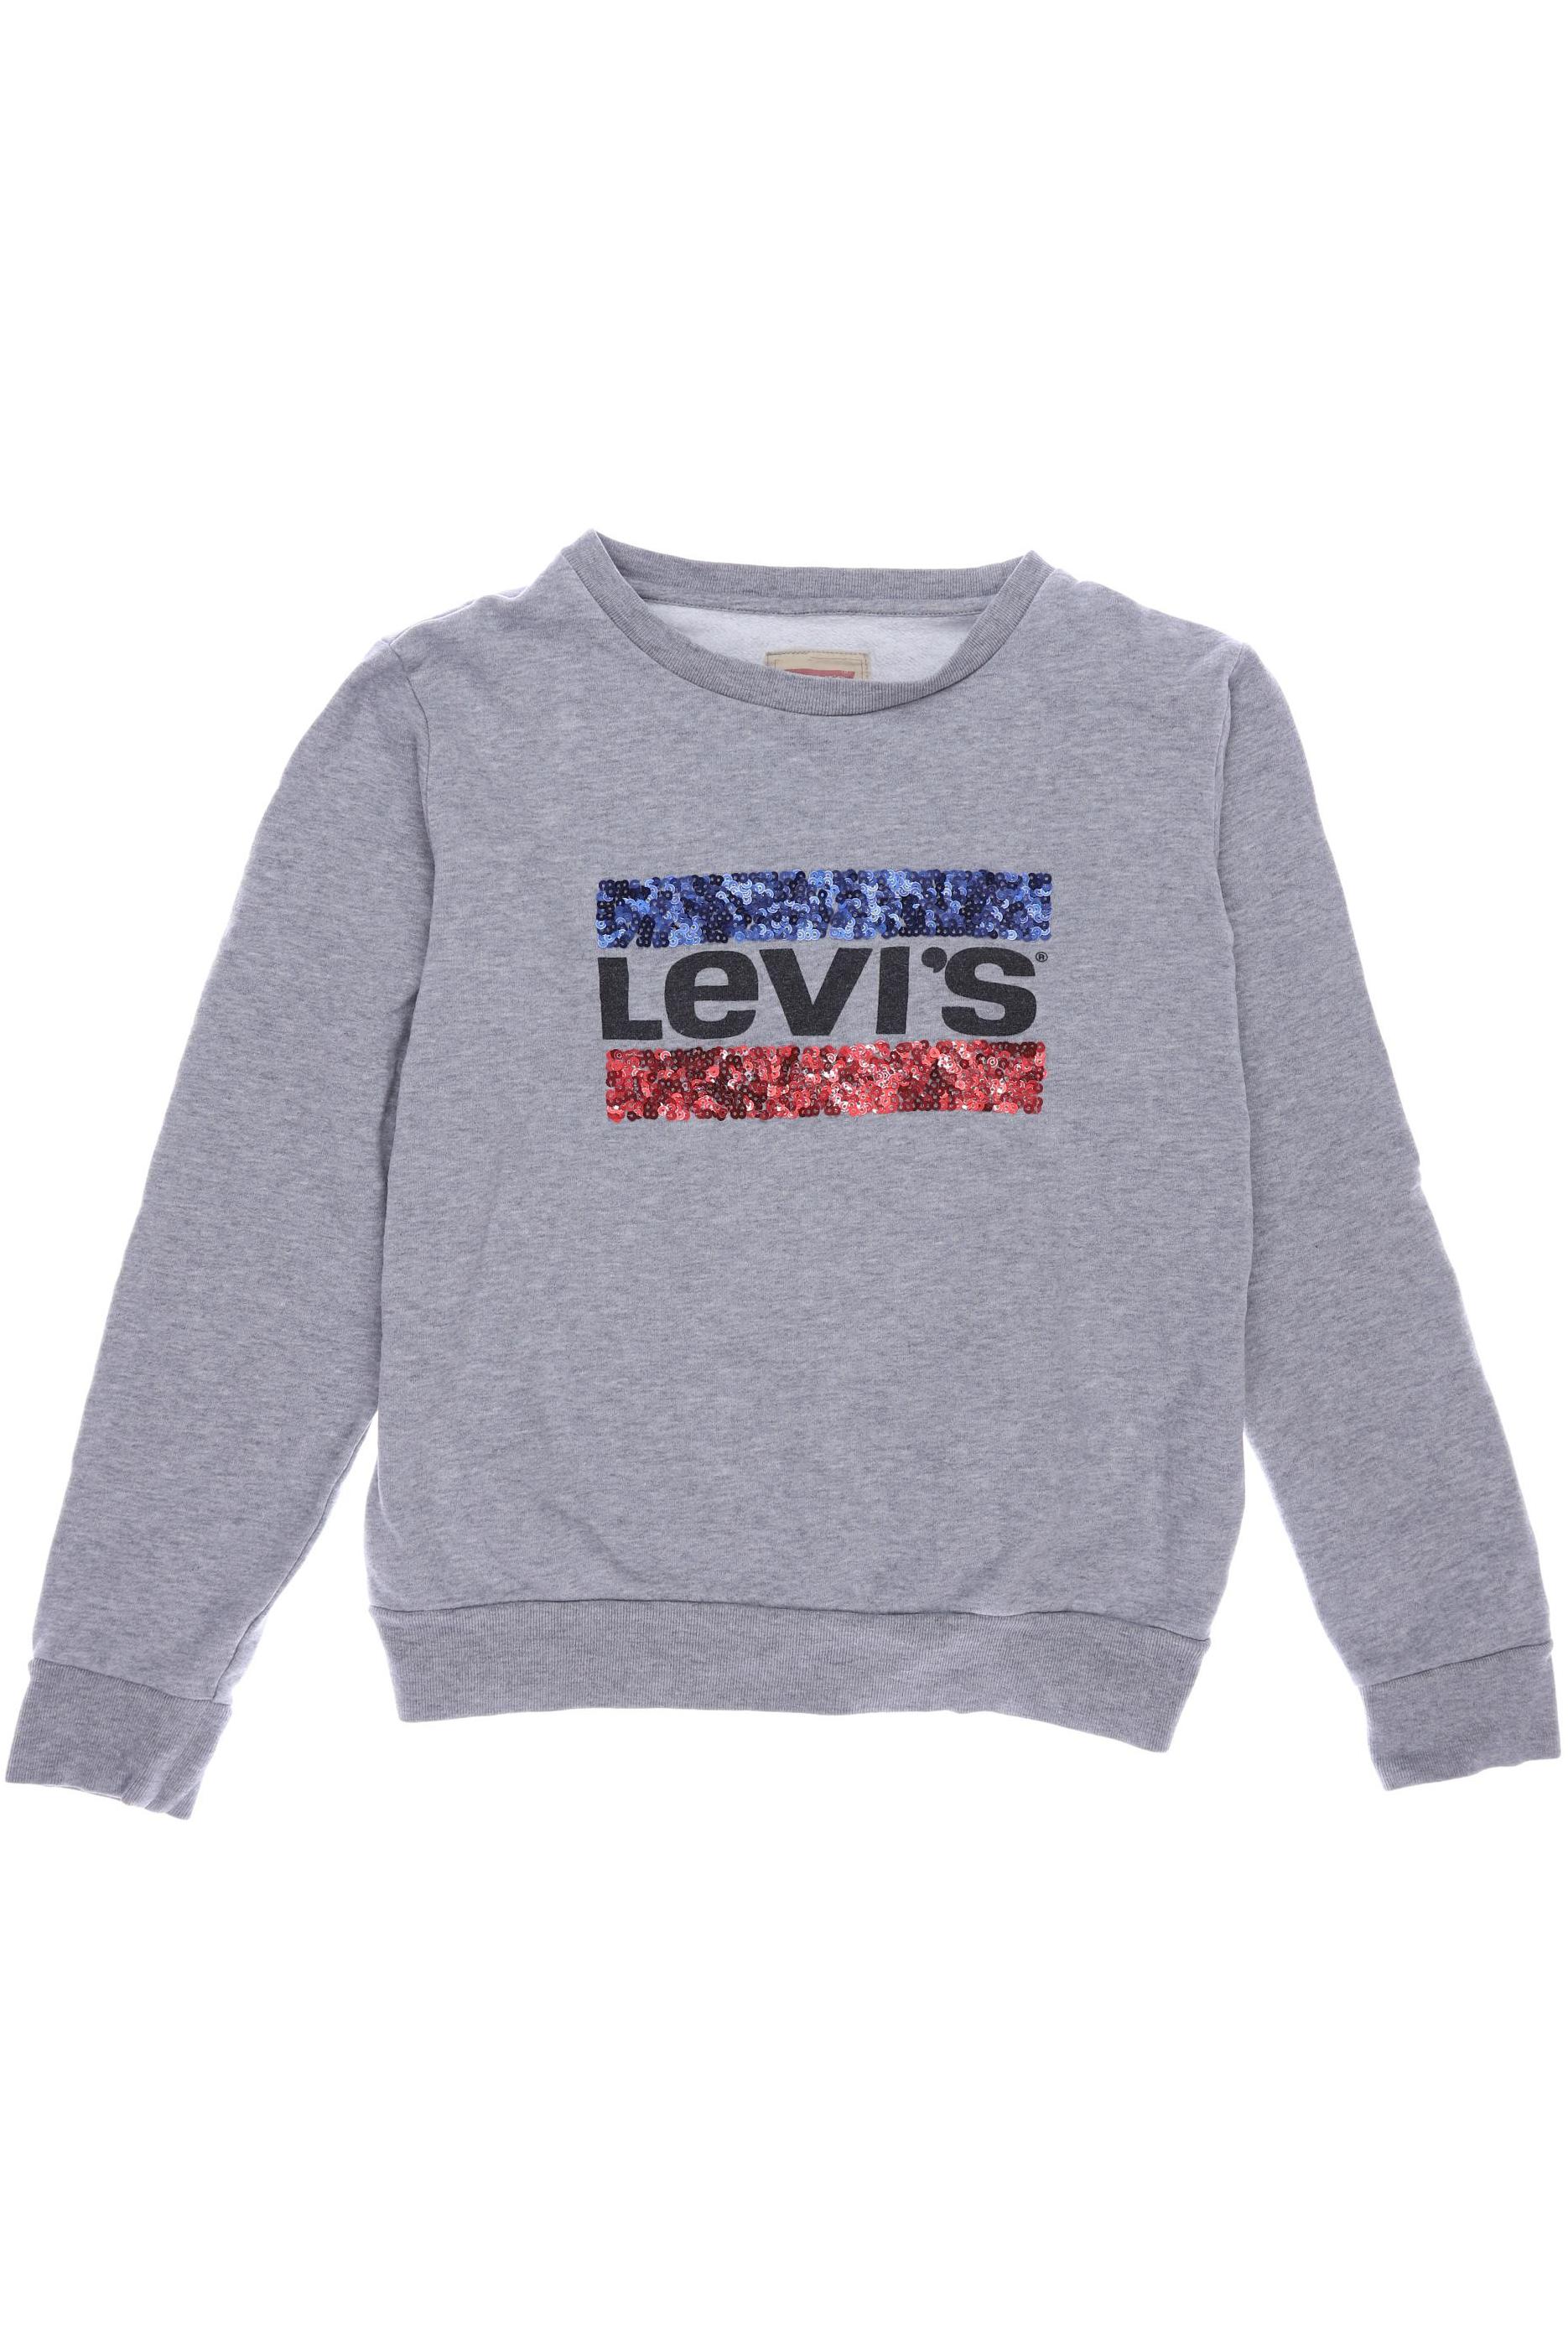 Levis Mädchen Hoodies & Sweater, grau von Levis